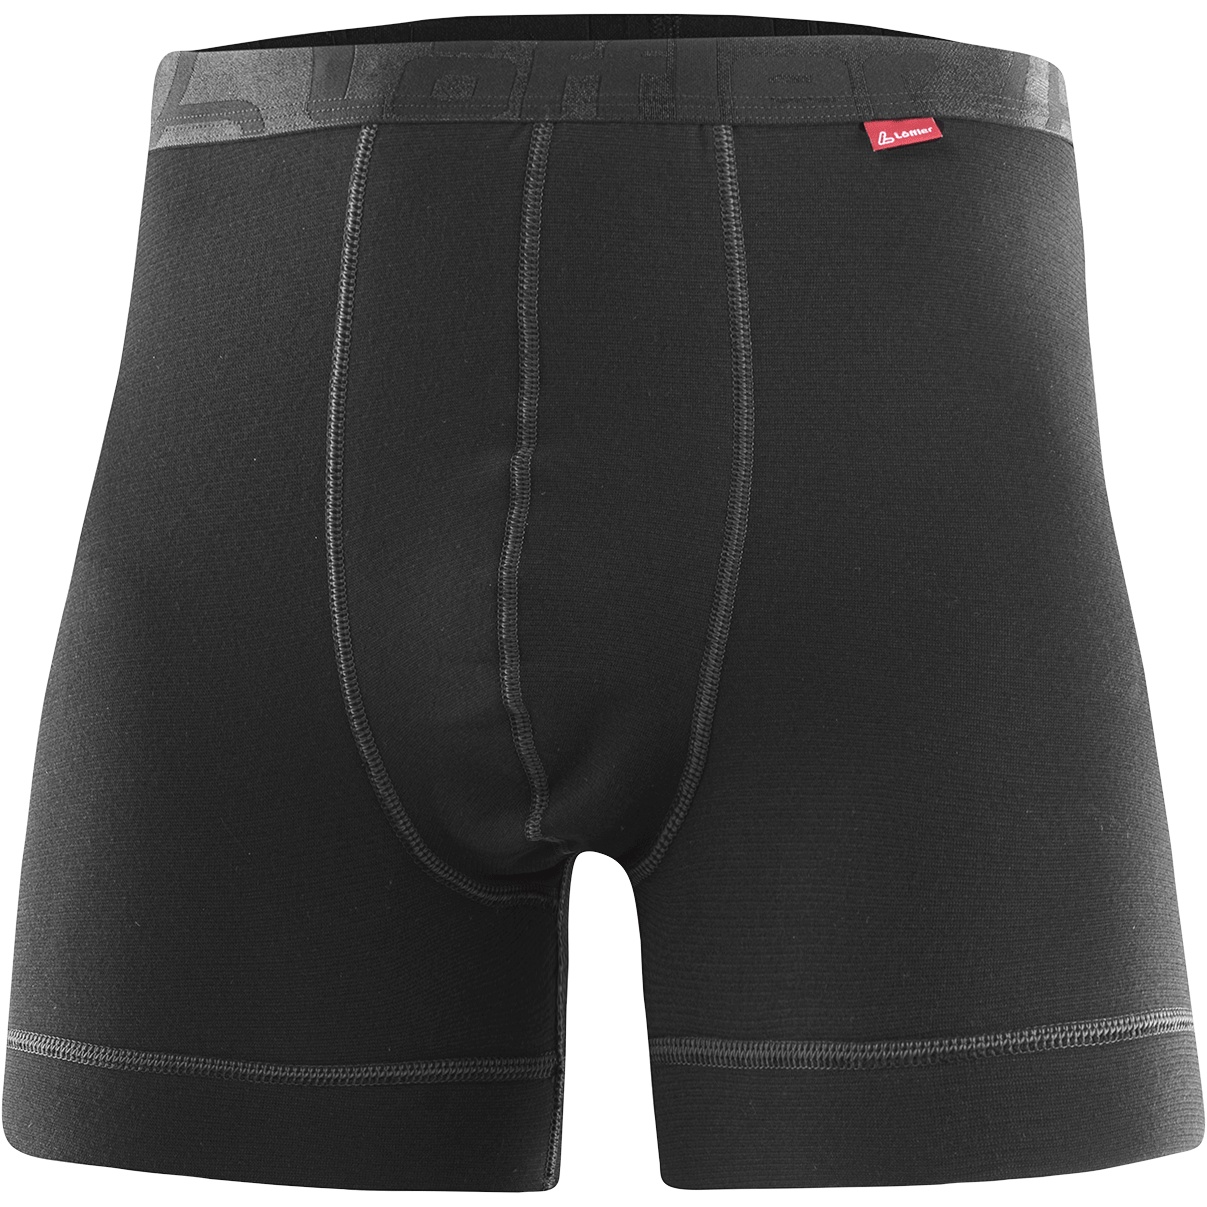 Produktbild von Löffler Transtex® Warm Boxershorts Herren - schwarz 990